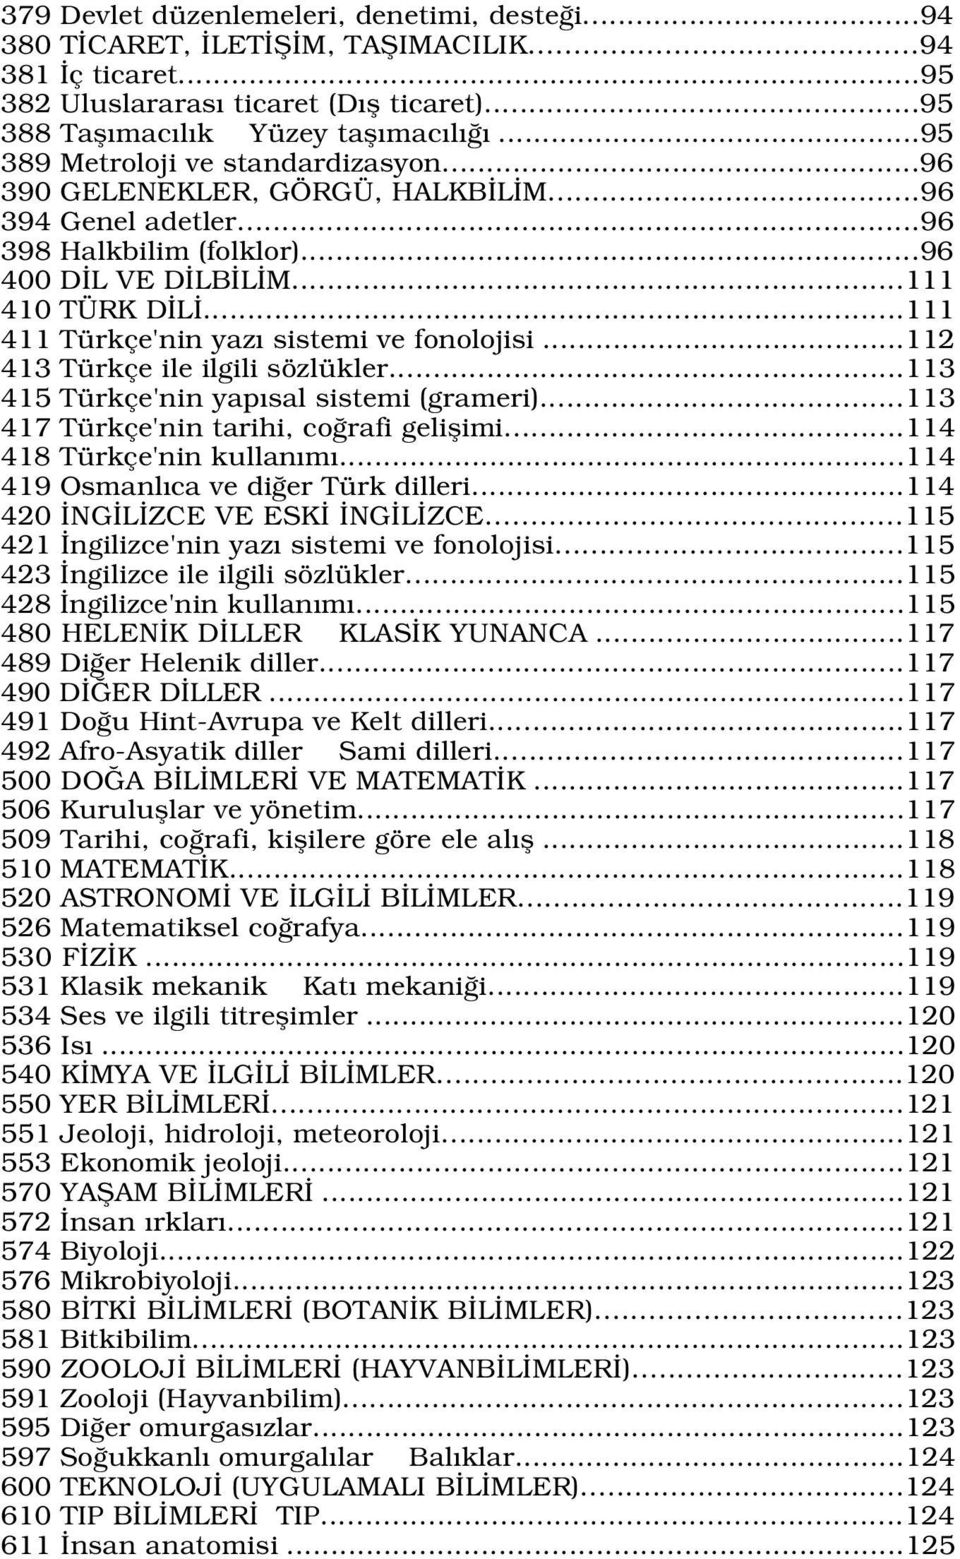 ..111 411 Türkçe'nin yaz sistemi ve fonolojisi...112 413 Türkçe ile ilgili sözlükler...113 415 Türkçe'nin yap sal sistemi (grameri)...113 417 Türkçe'nin tarihi, co rafi geliflimi.